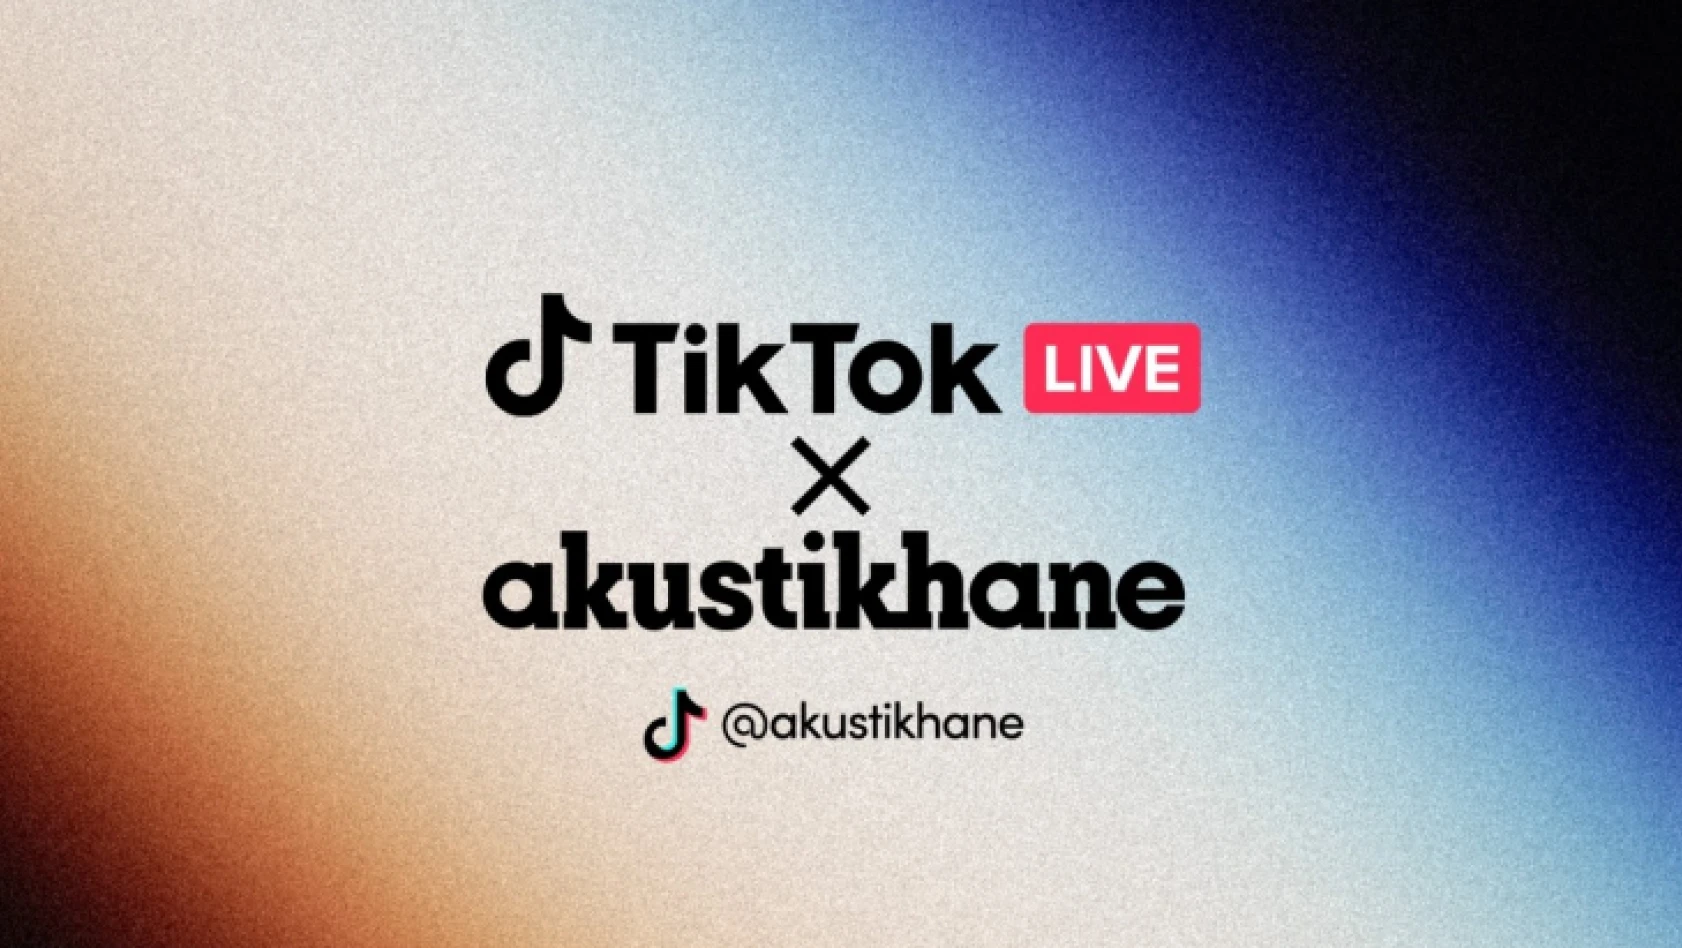 TikTok ve Akustikhane'den heyecan verici işbirliği! AkustikhaneTikTok canlı yayın konserleri başlıyor!